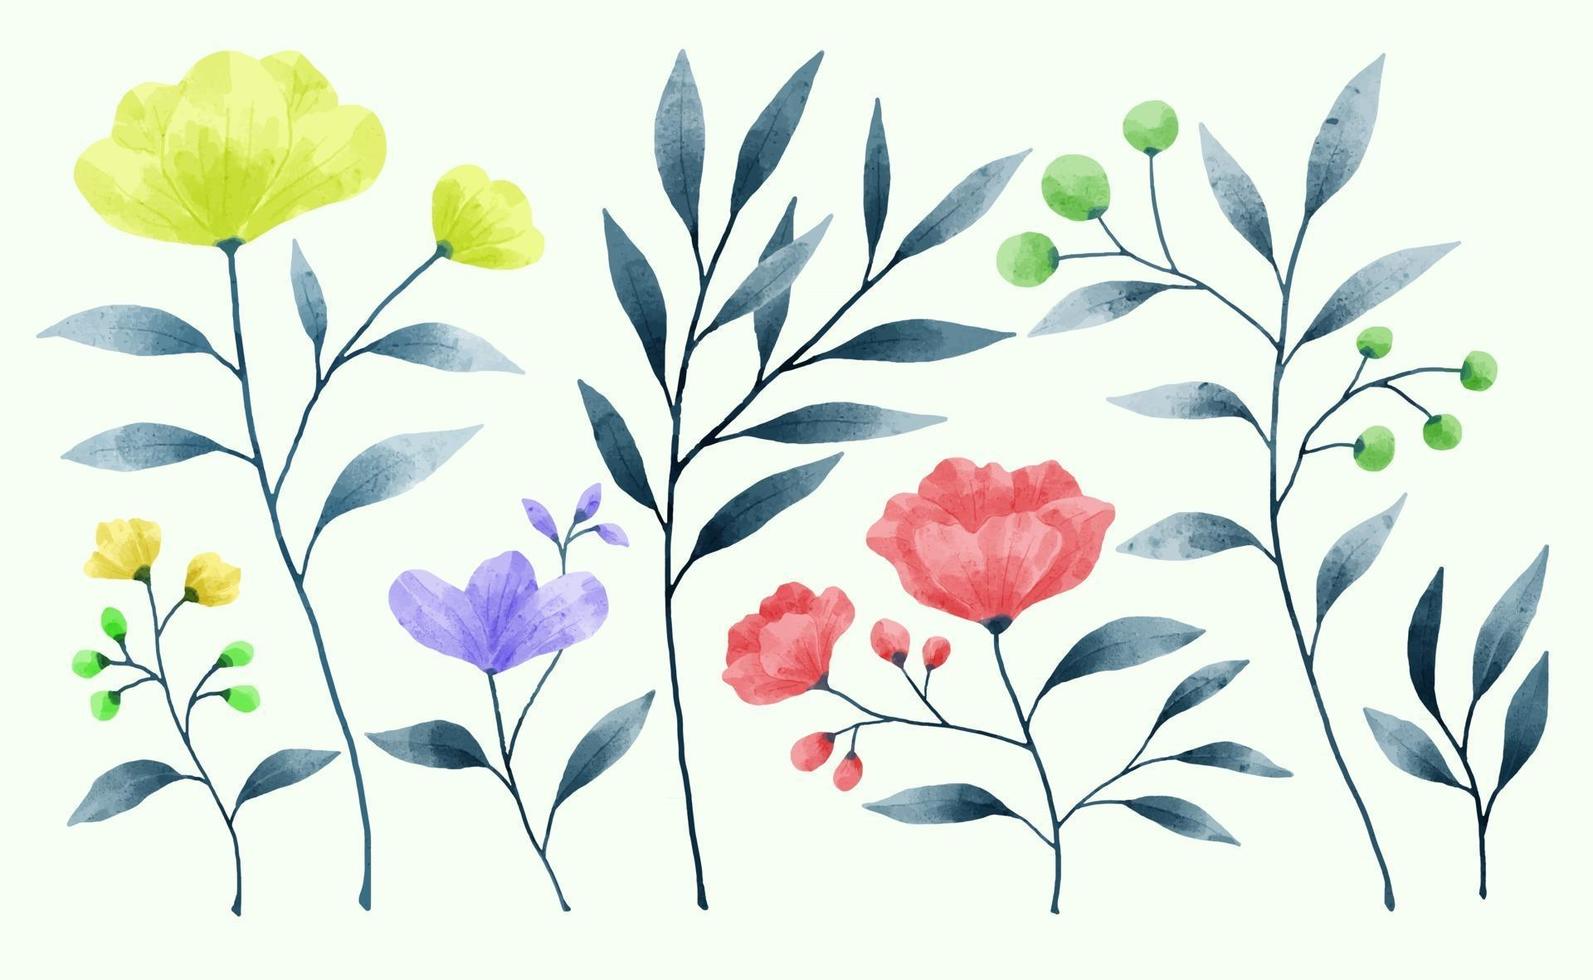 un ensemble de fleurs peintes à l'aquarelle pour diverses cartes et cartes de vœux. vecteur